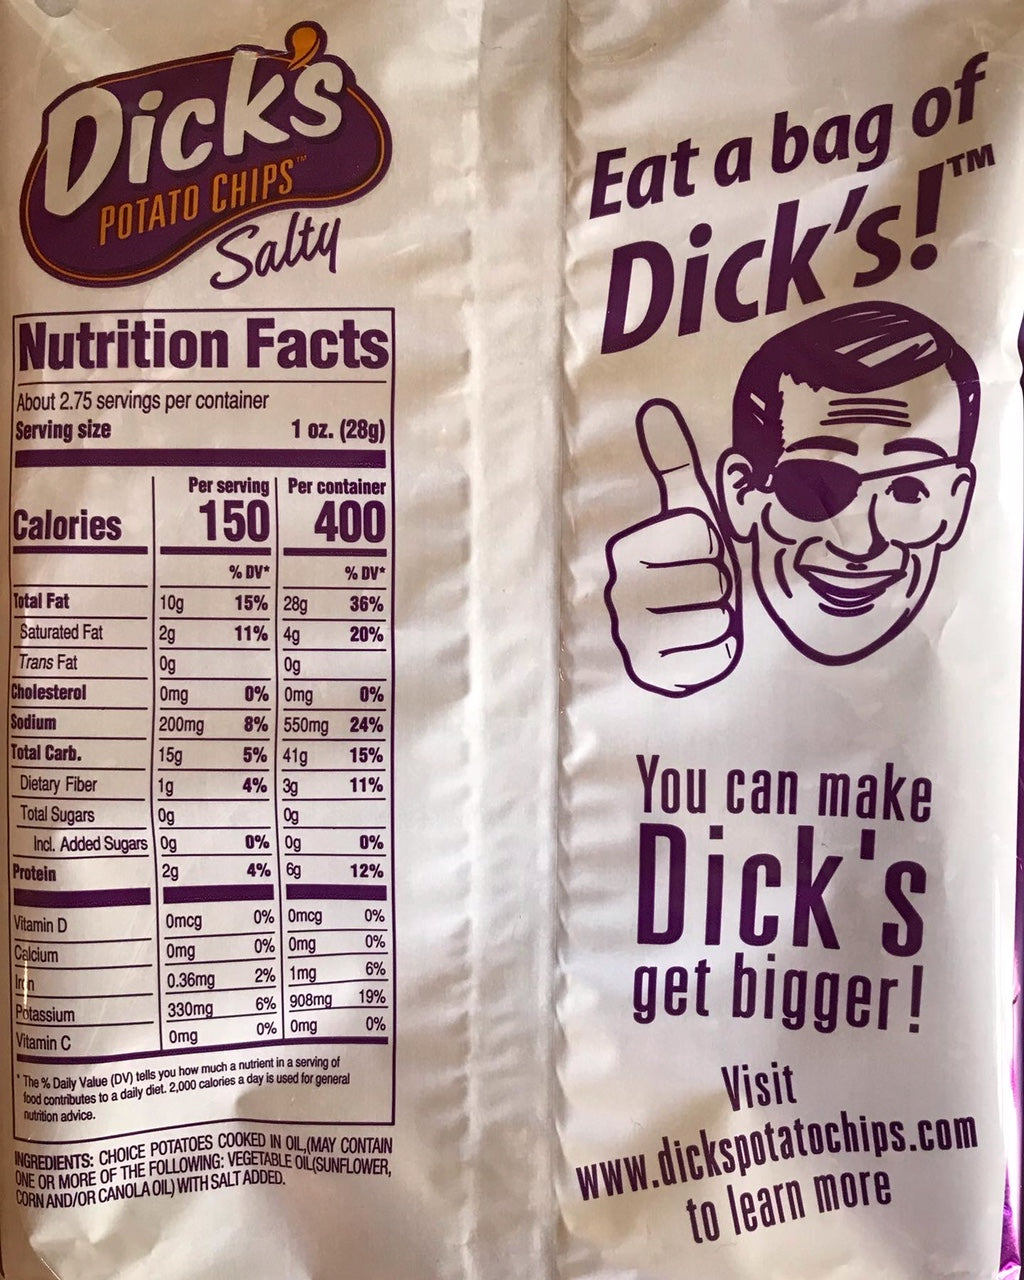 Bag of Dicks - Dicks&#39; Potato Chips